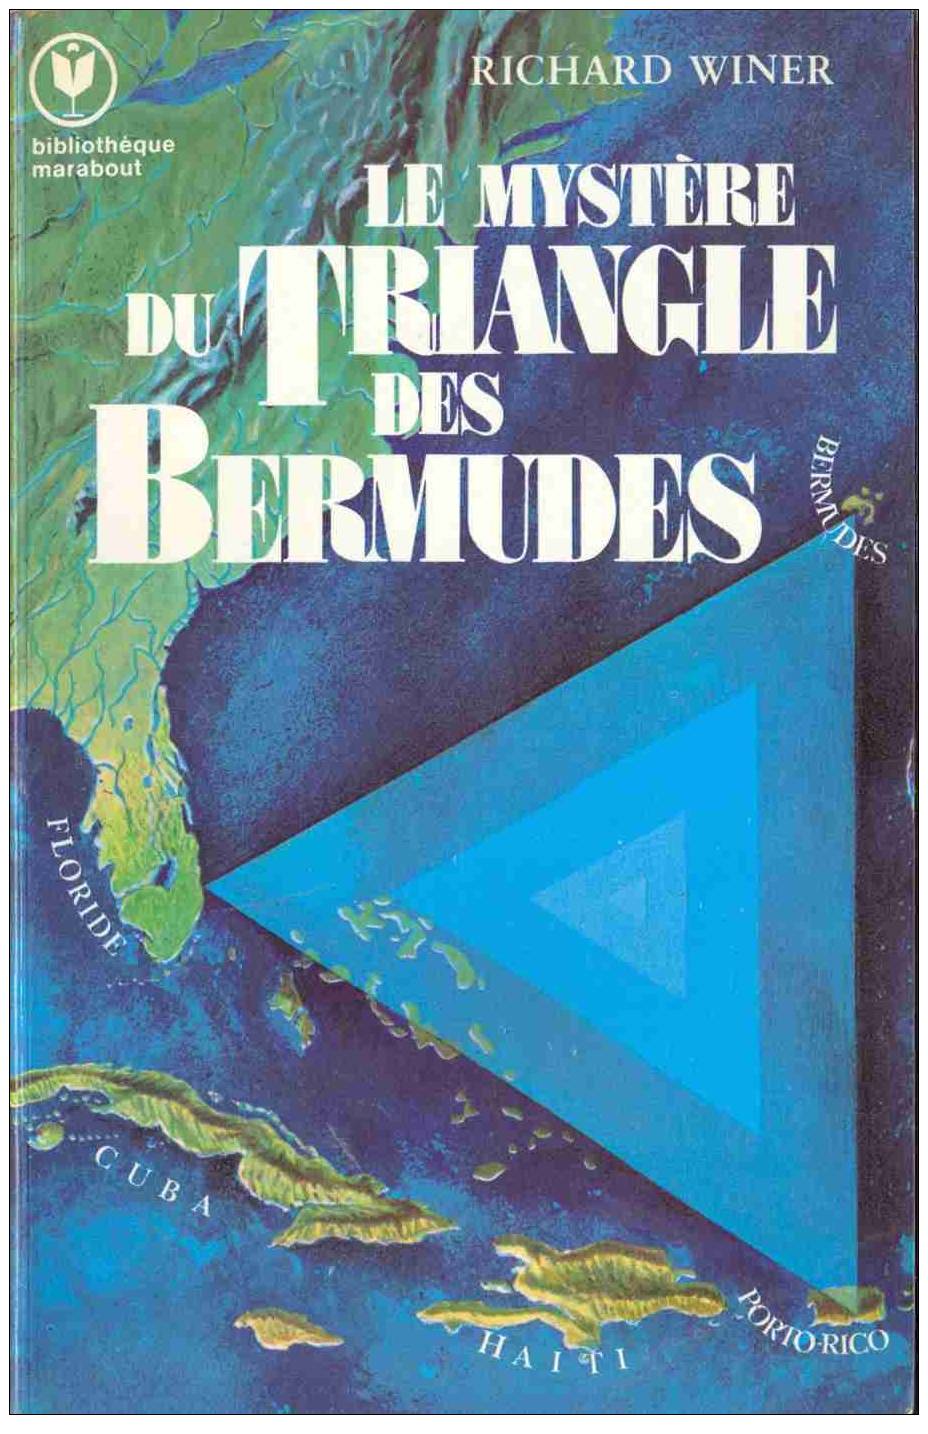 Bibliothèque Marabout 608 - Richard Winer - Le Mystère Du Triangle Des Bermudes - 1976 - TBE - Aventura